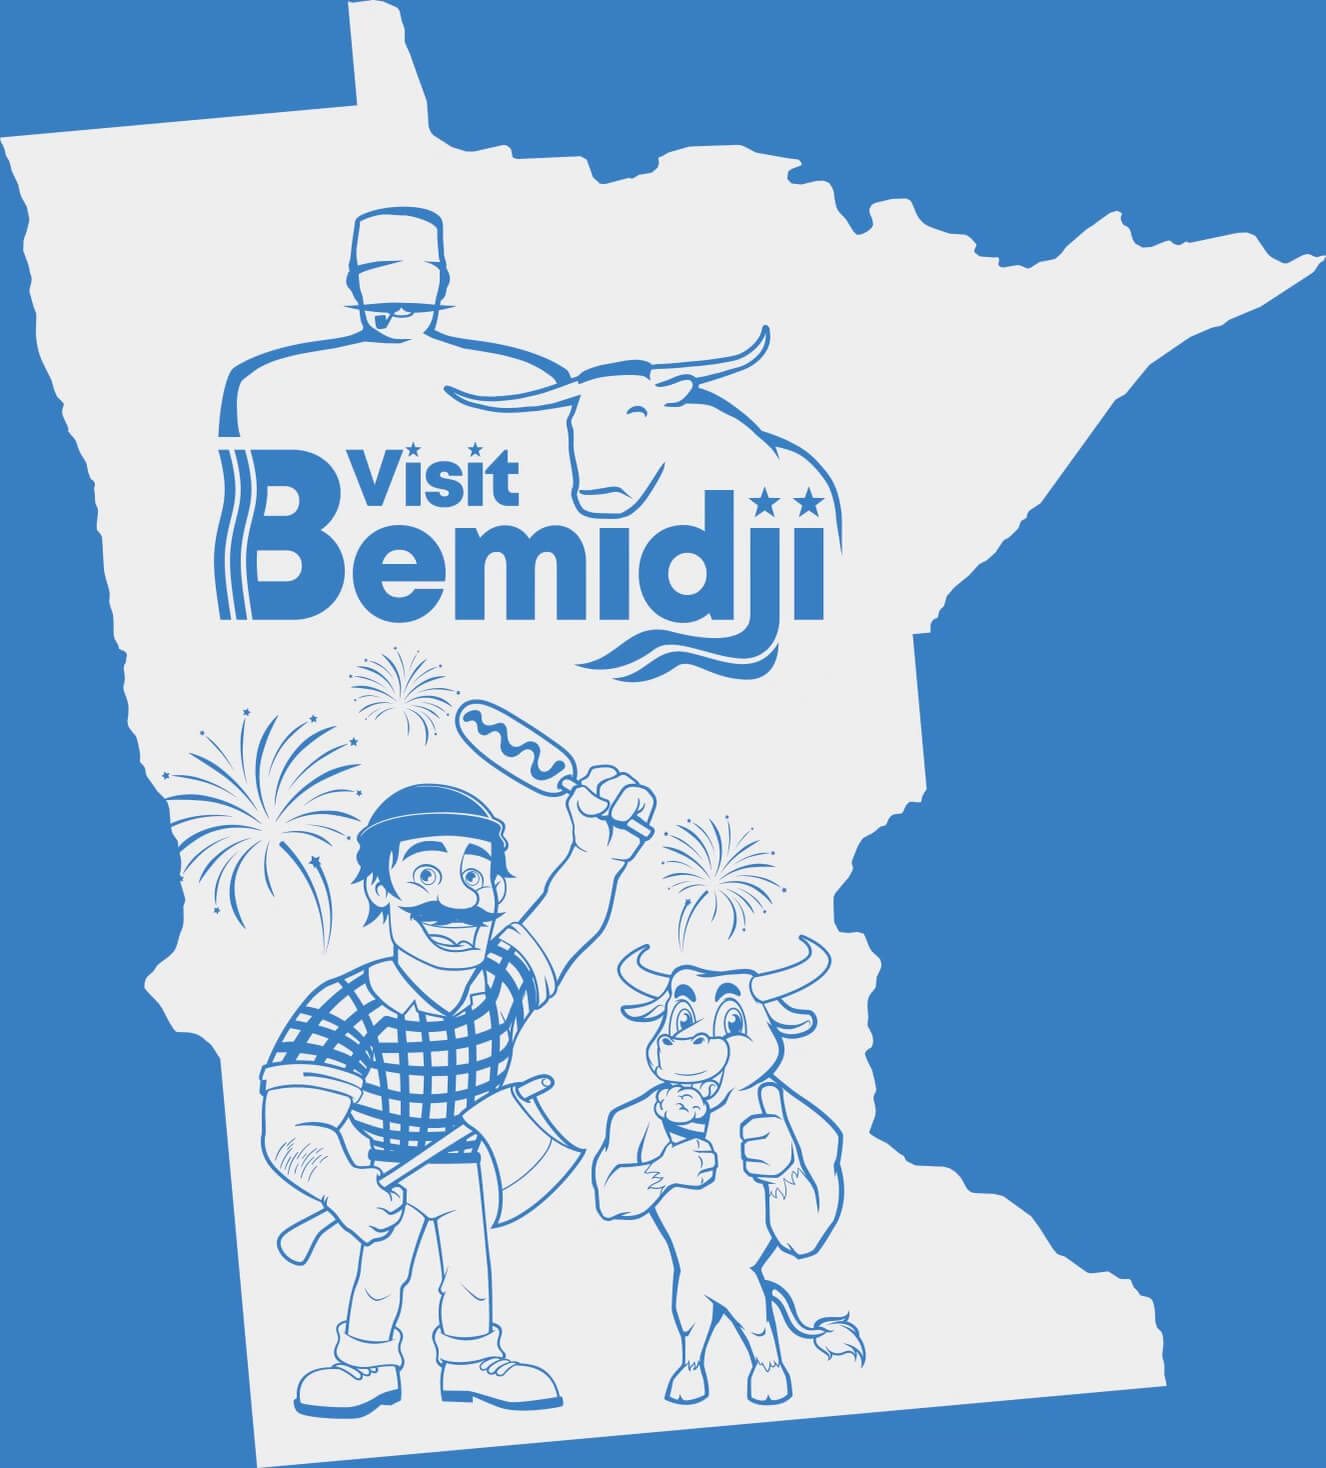 Visit Bemidji at the state fair